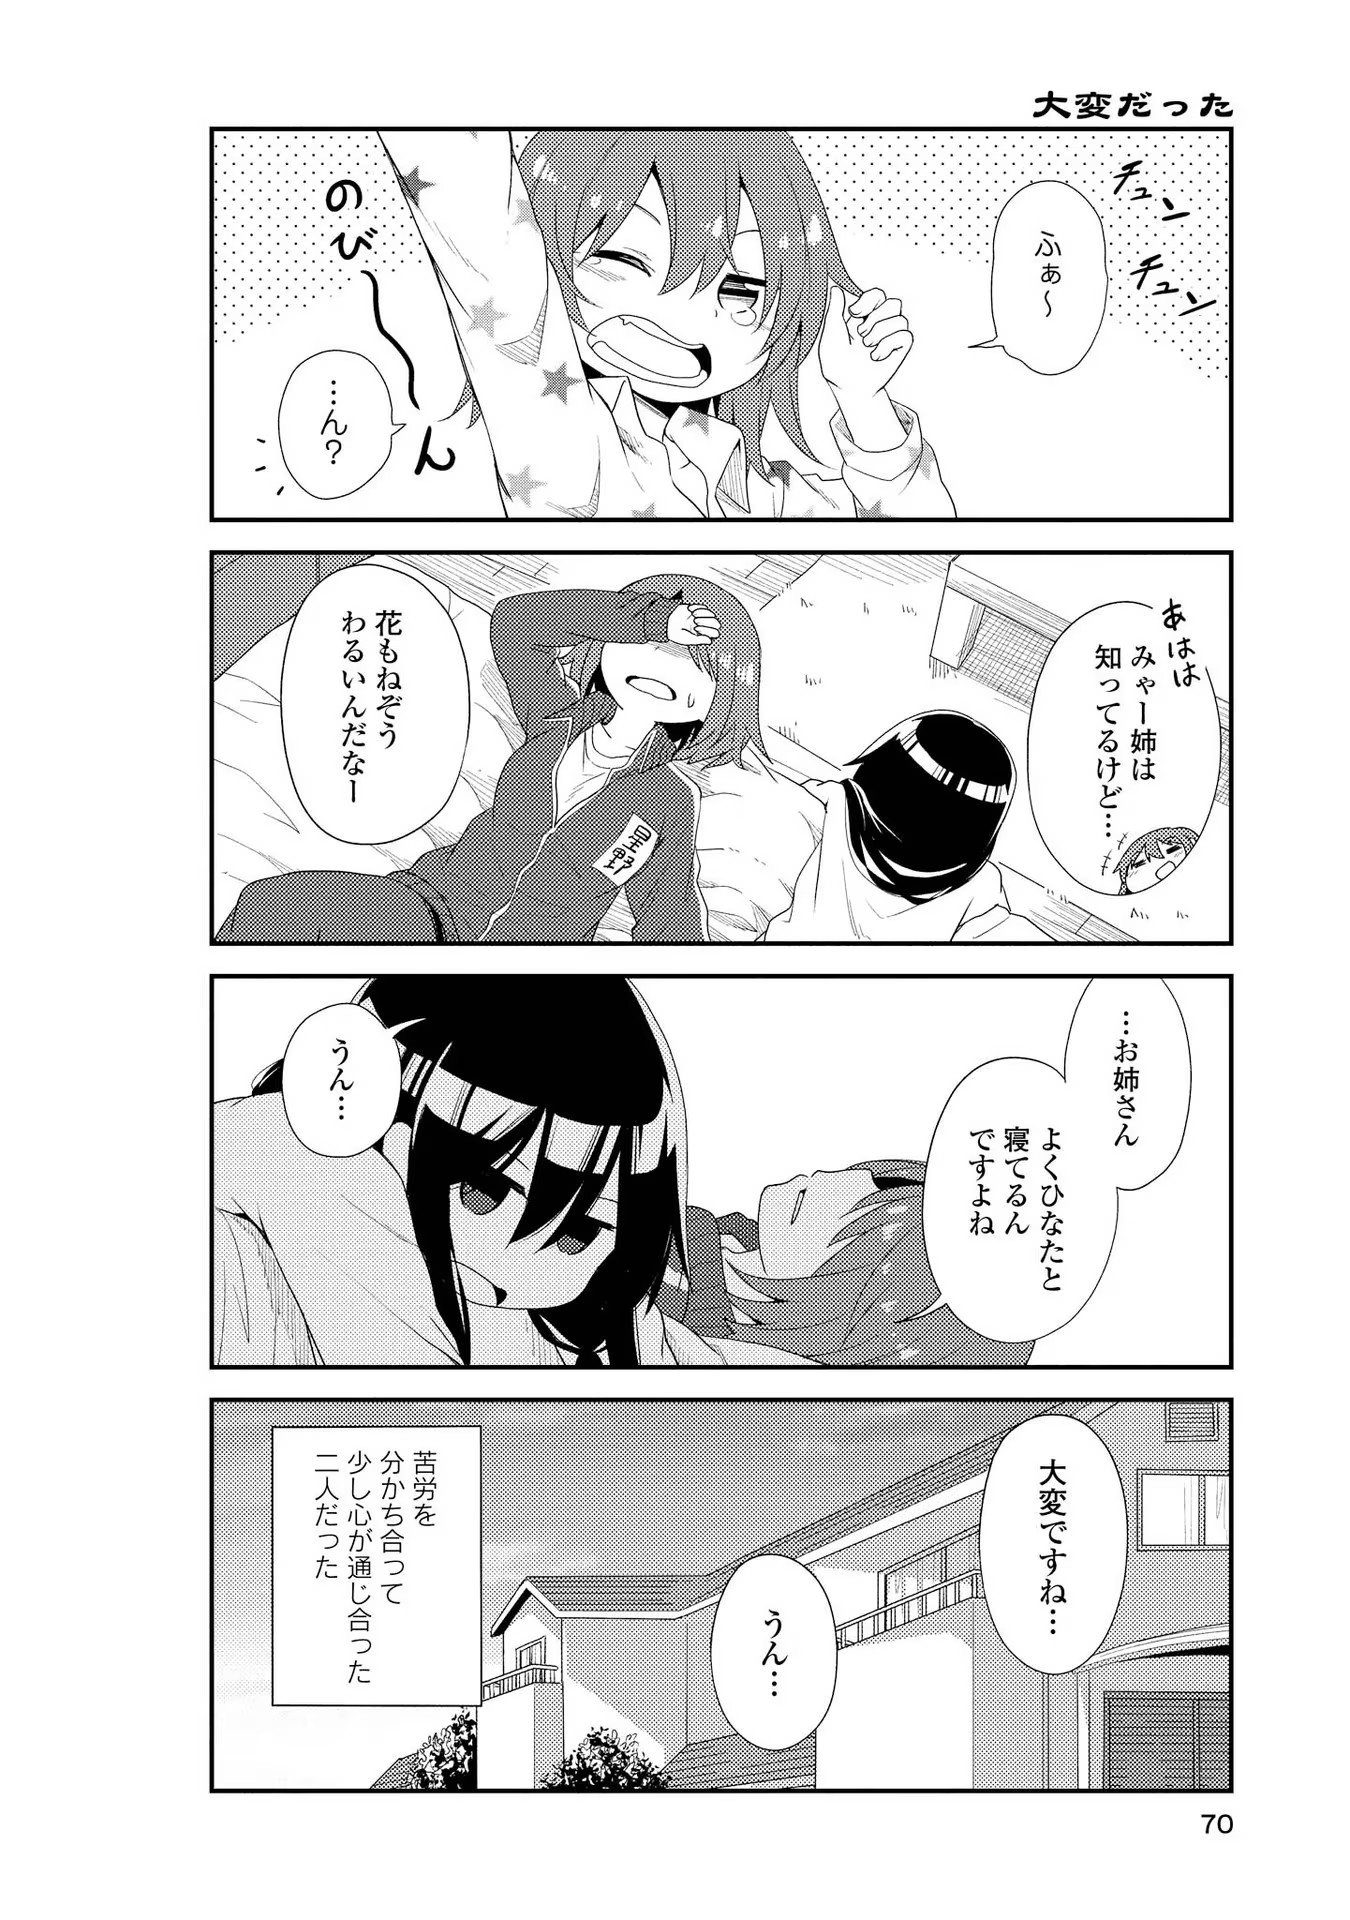 Watashi ni Tenshi ga Maiorita! - Chapter 4 - Page 12